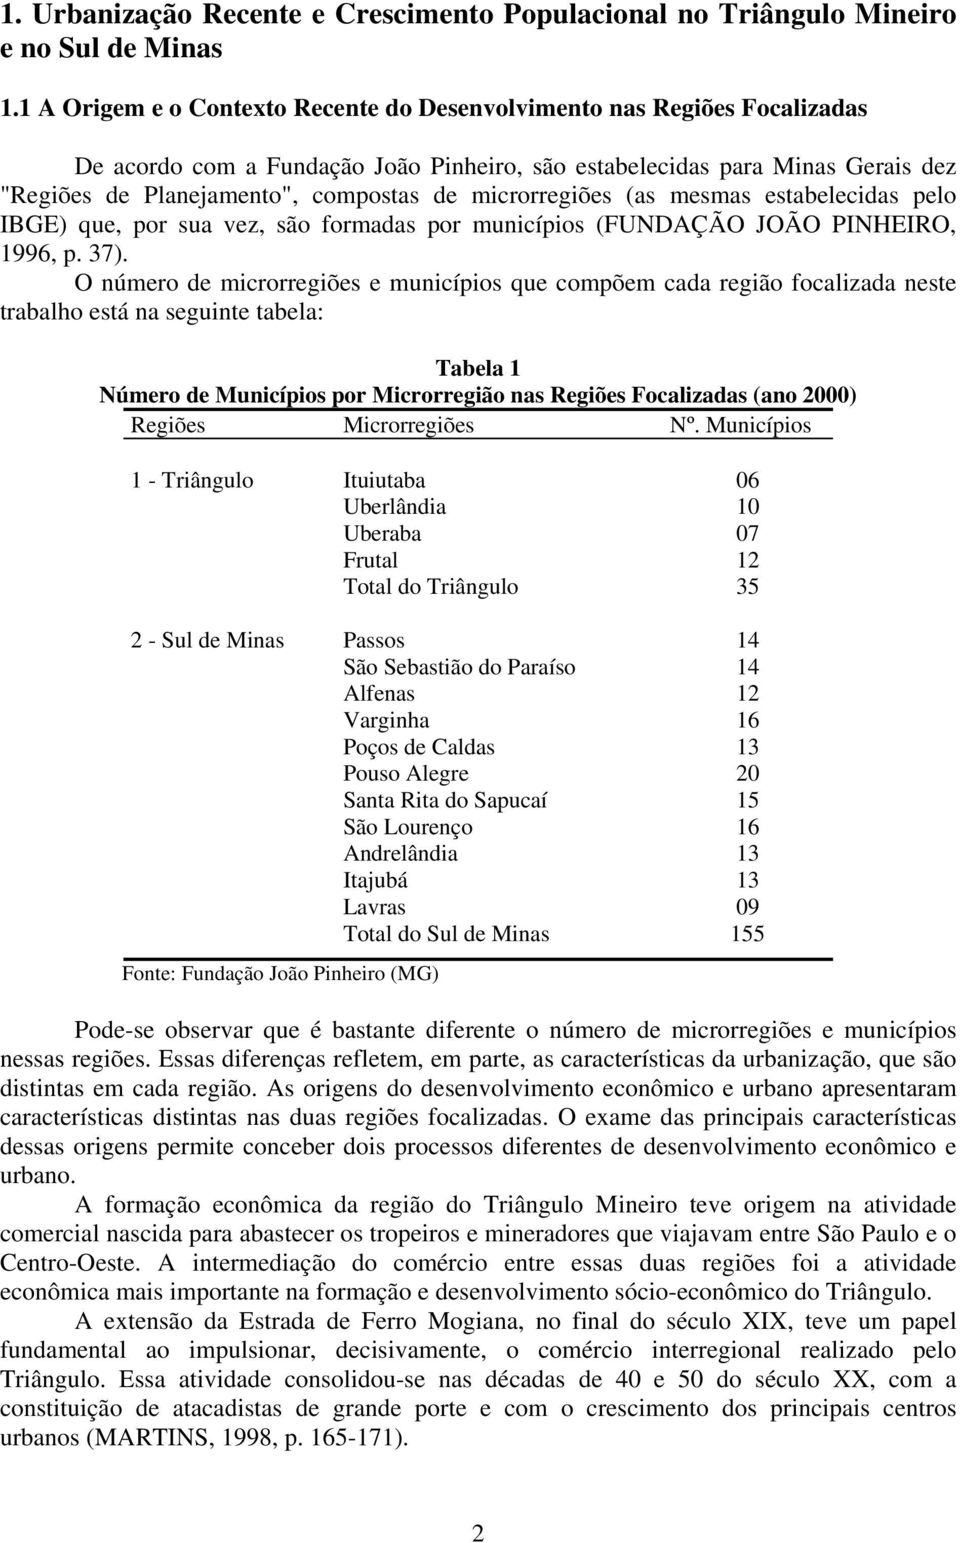 microrregiões (as mesmas estabelecidas pelo IBGE) que, por sua vez, são formadas por municípios (FUNDAÇÃO JOÃO PINHEIRO, 1996, p. 37).